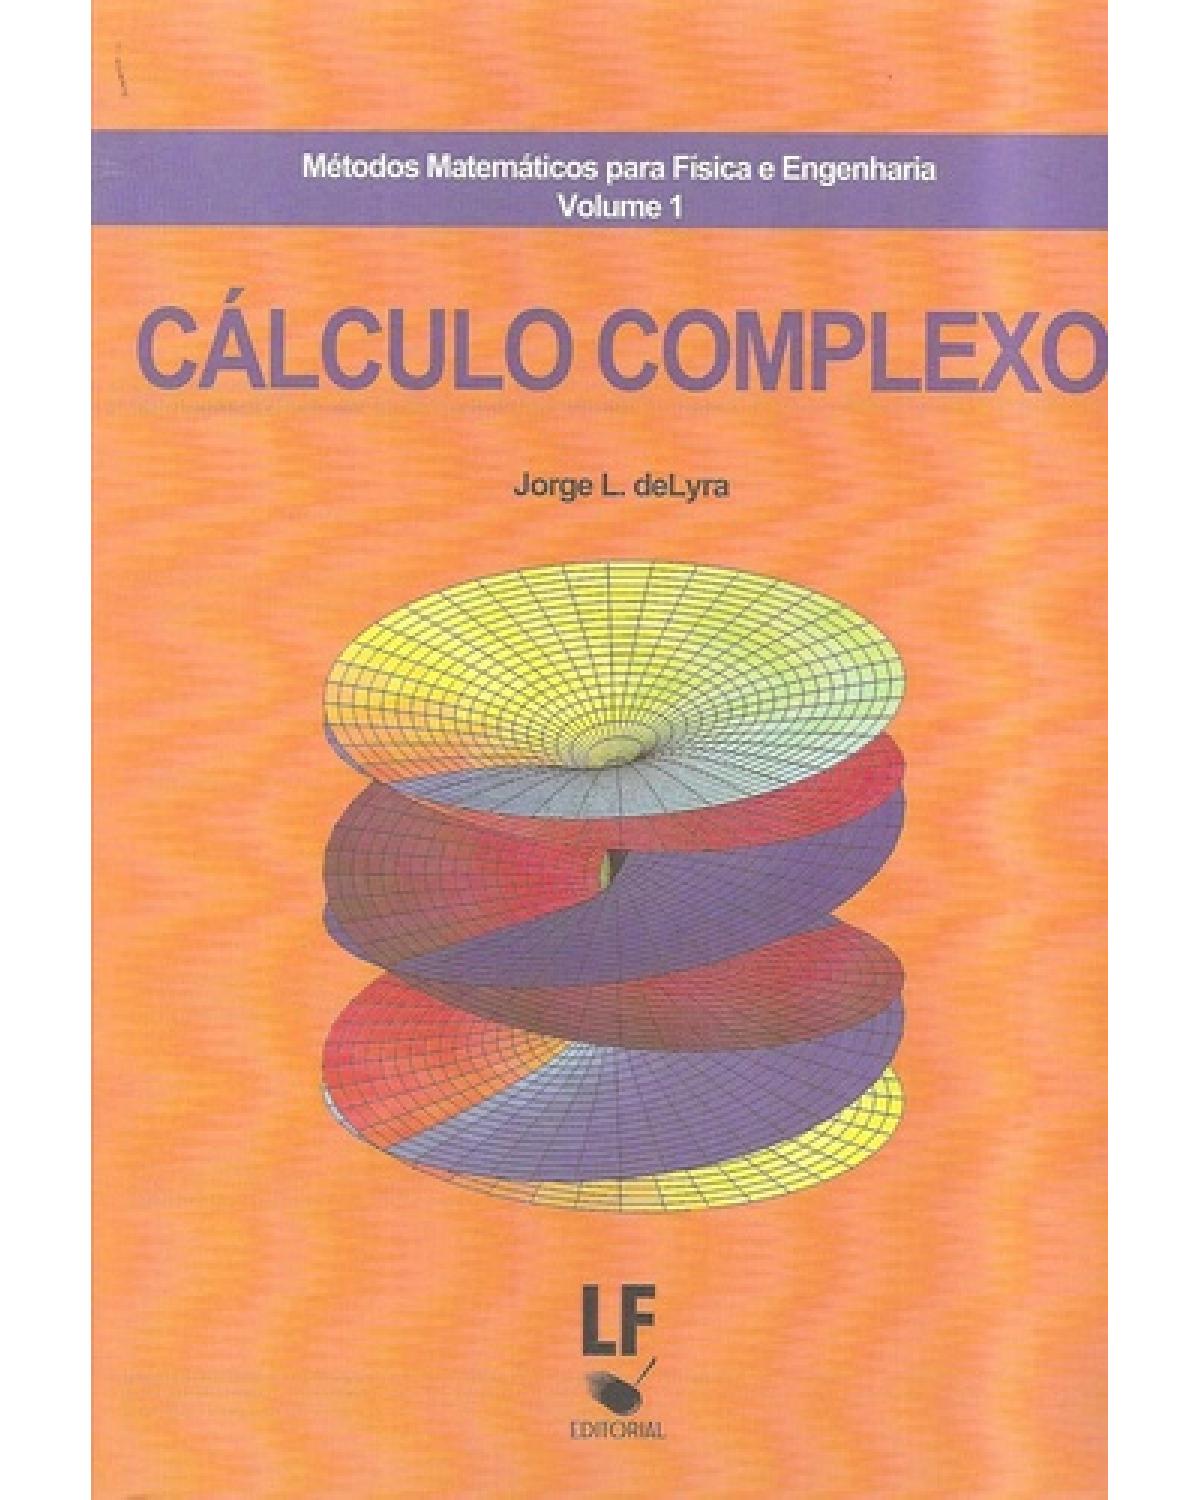 Métodos matemáticos para física e engenharia: Cálculo complexo